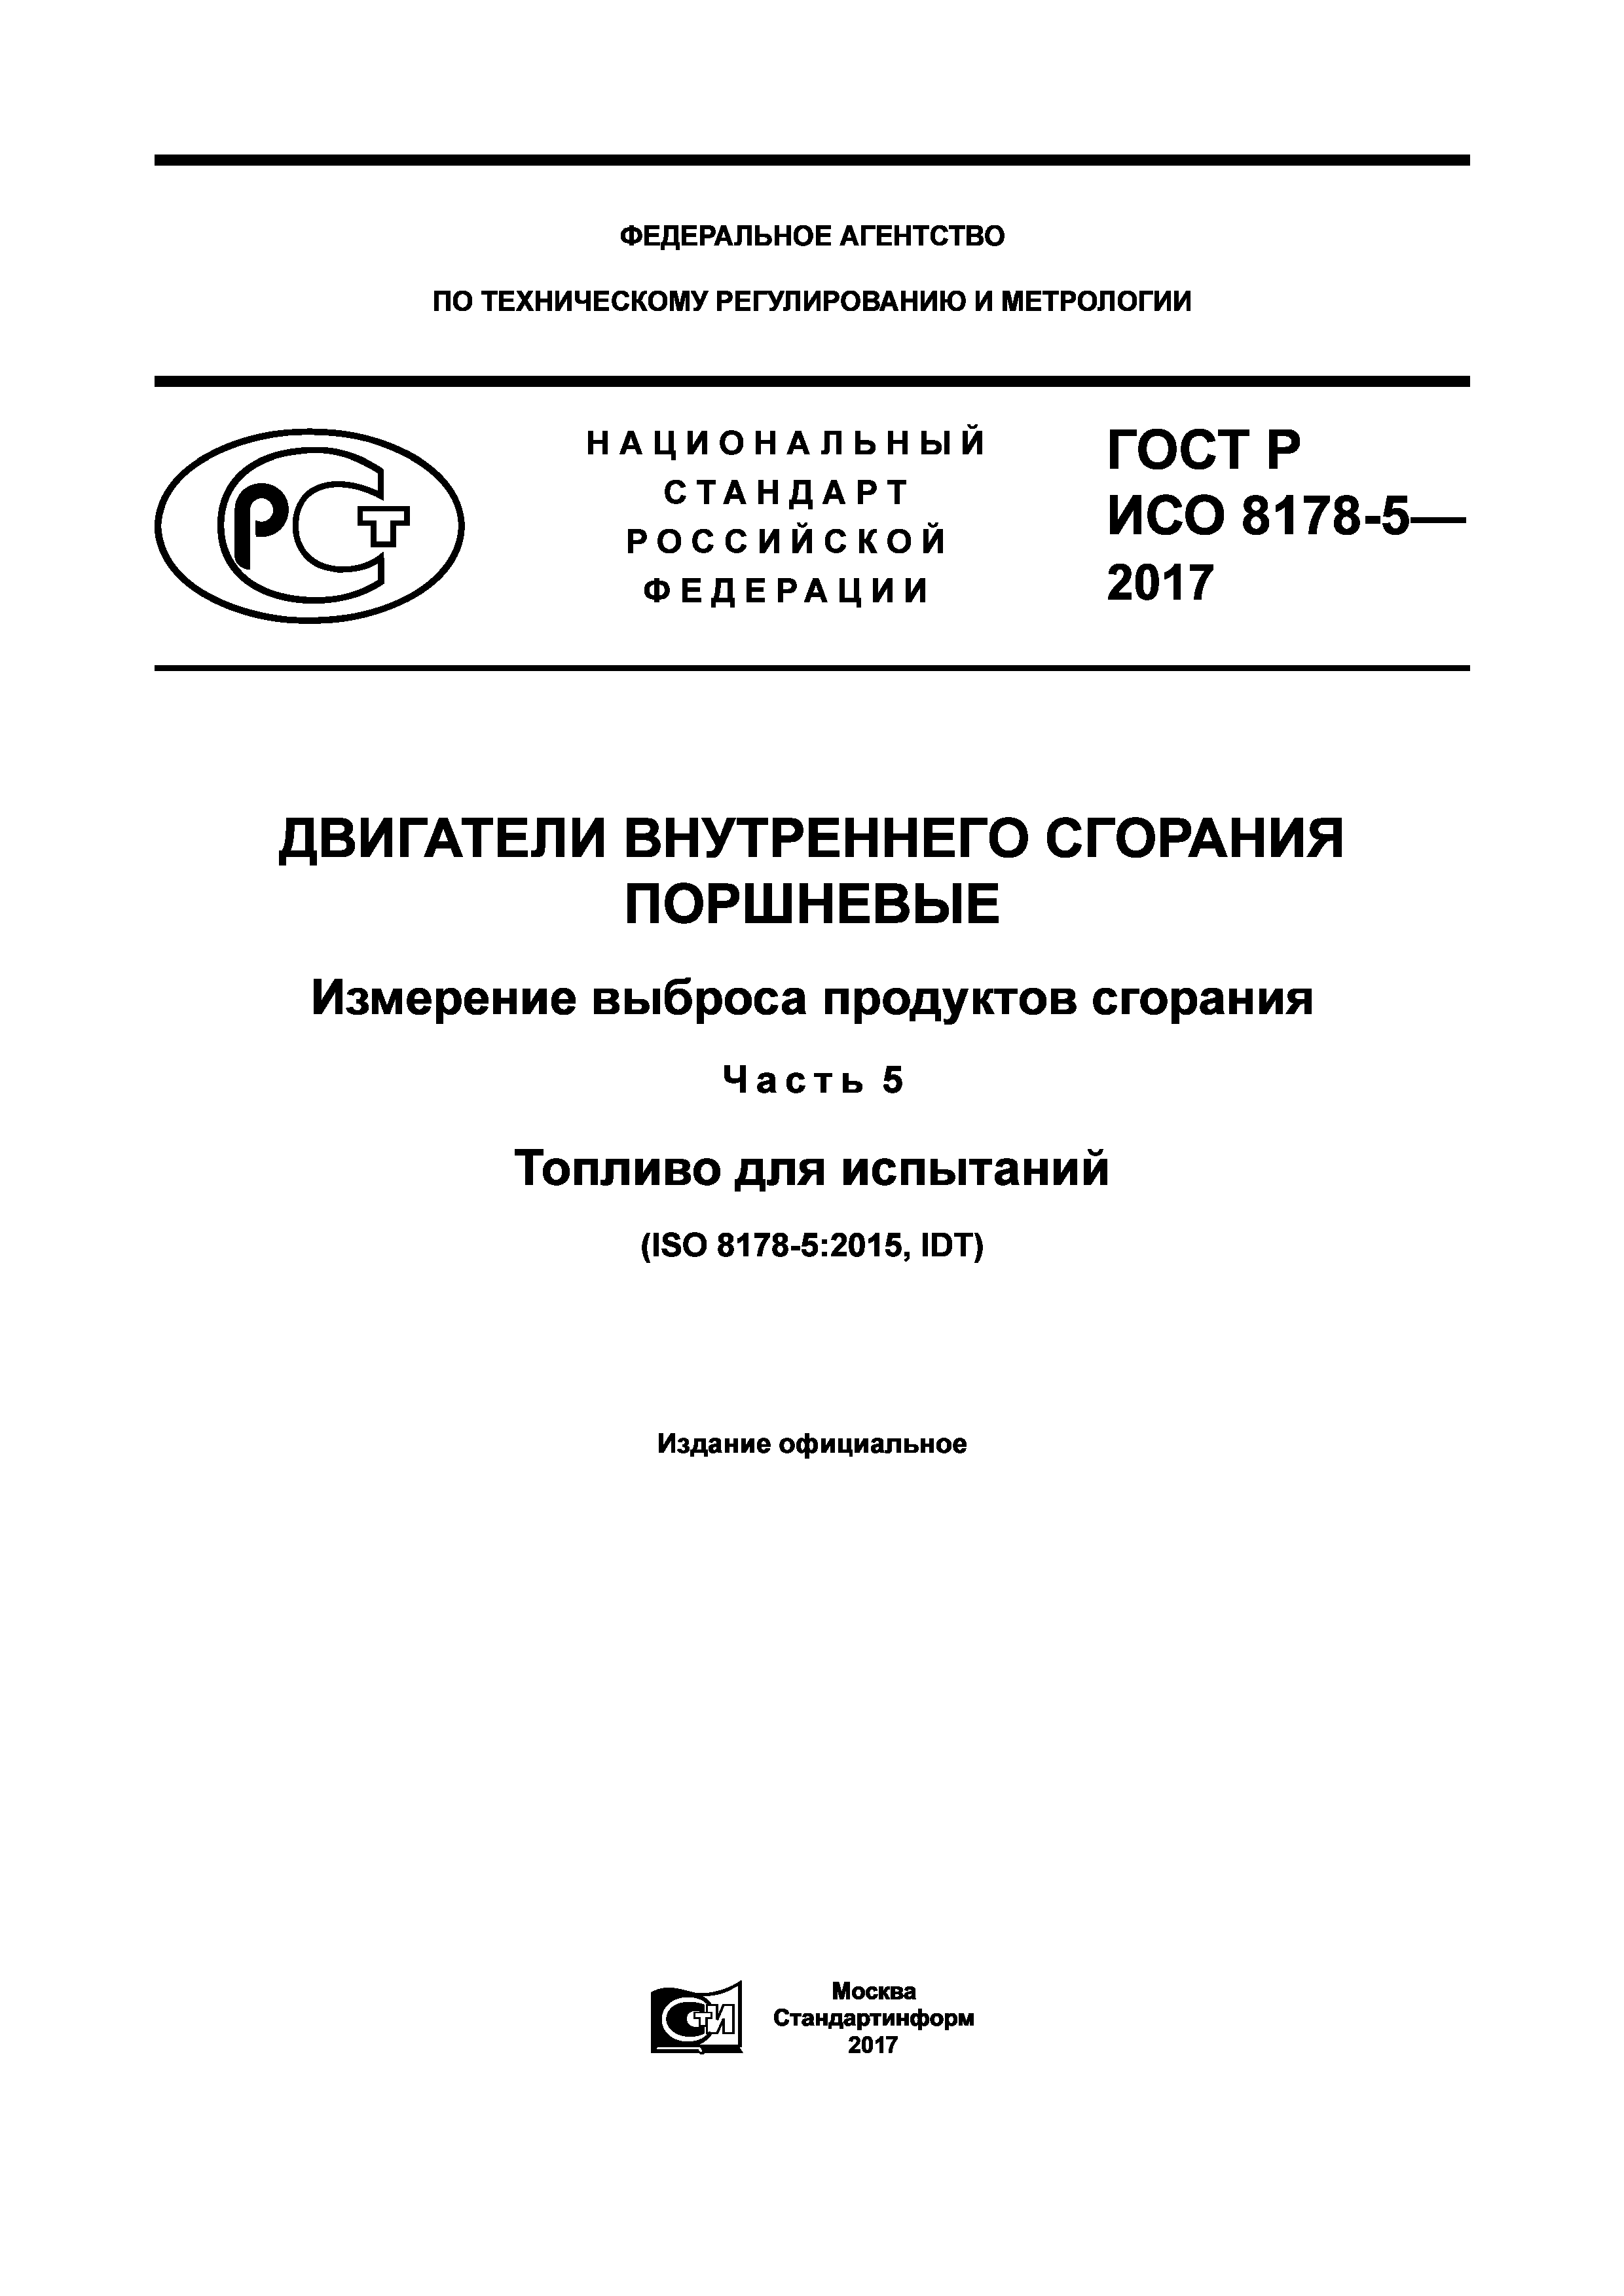 ГОСТ Р ИСО 8178-5-2017